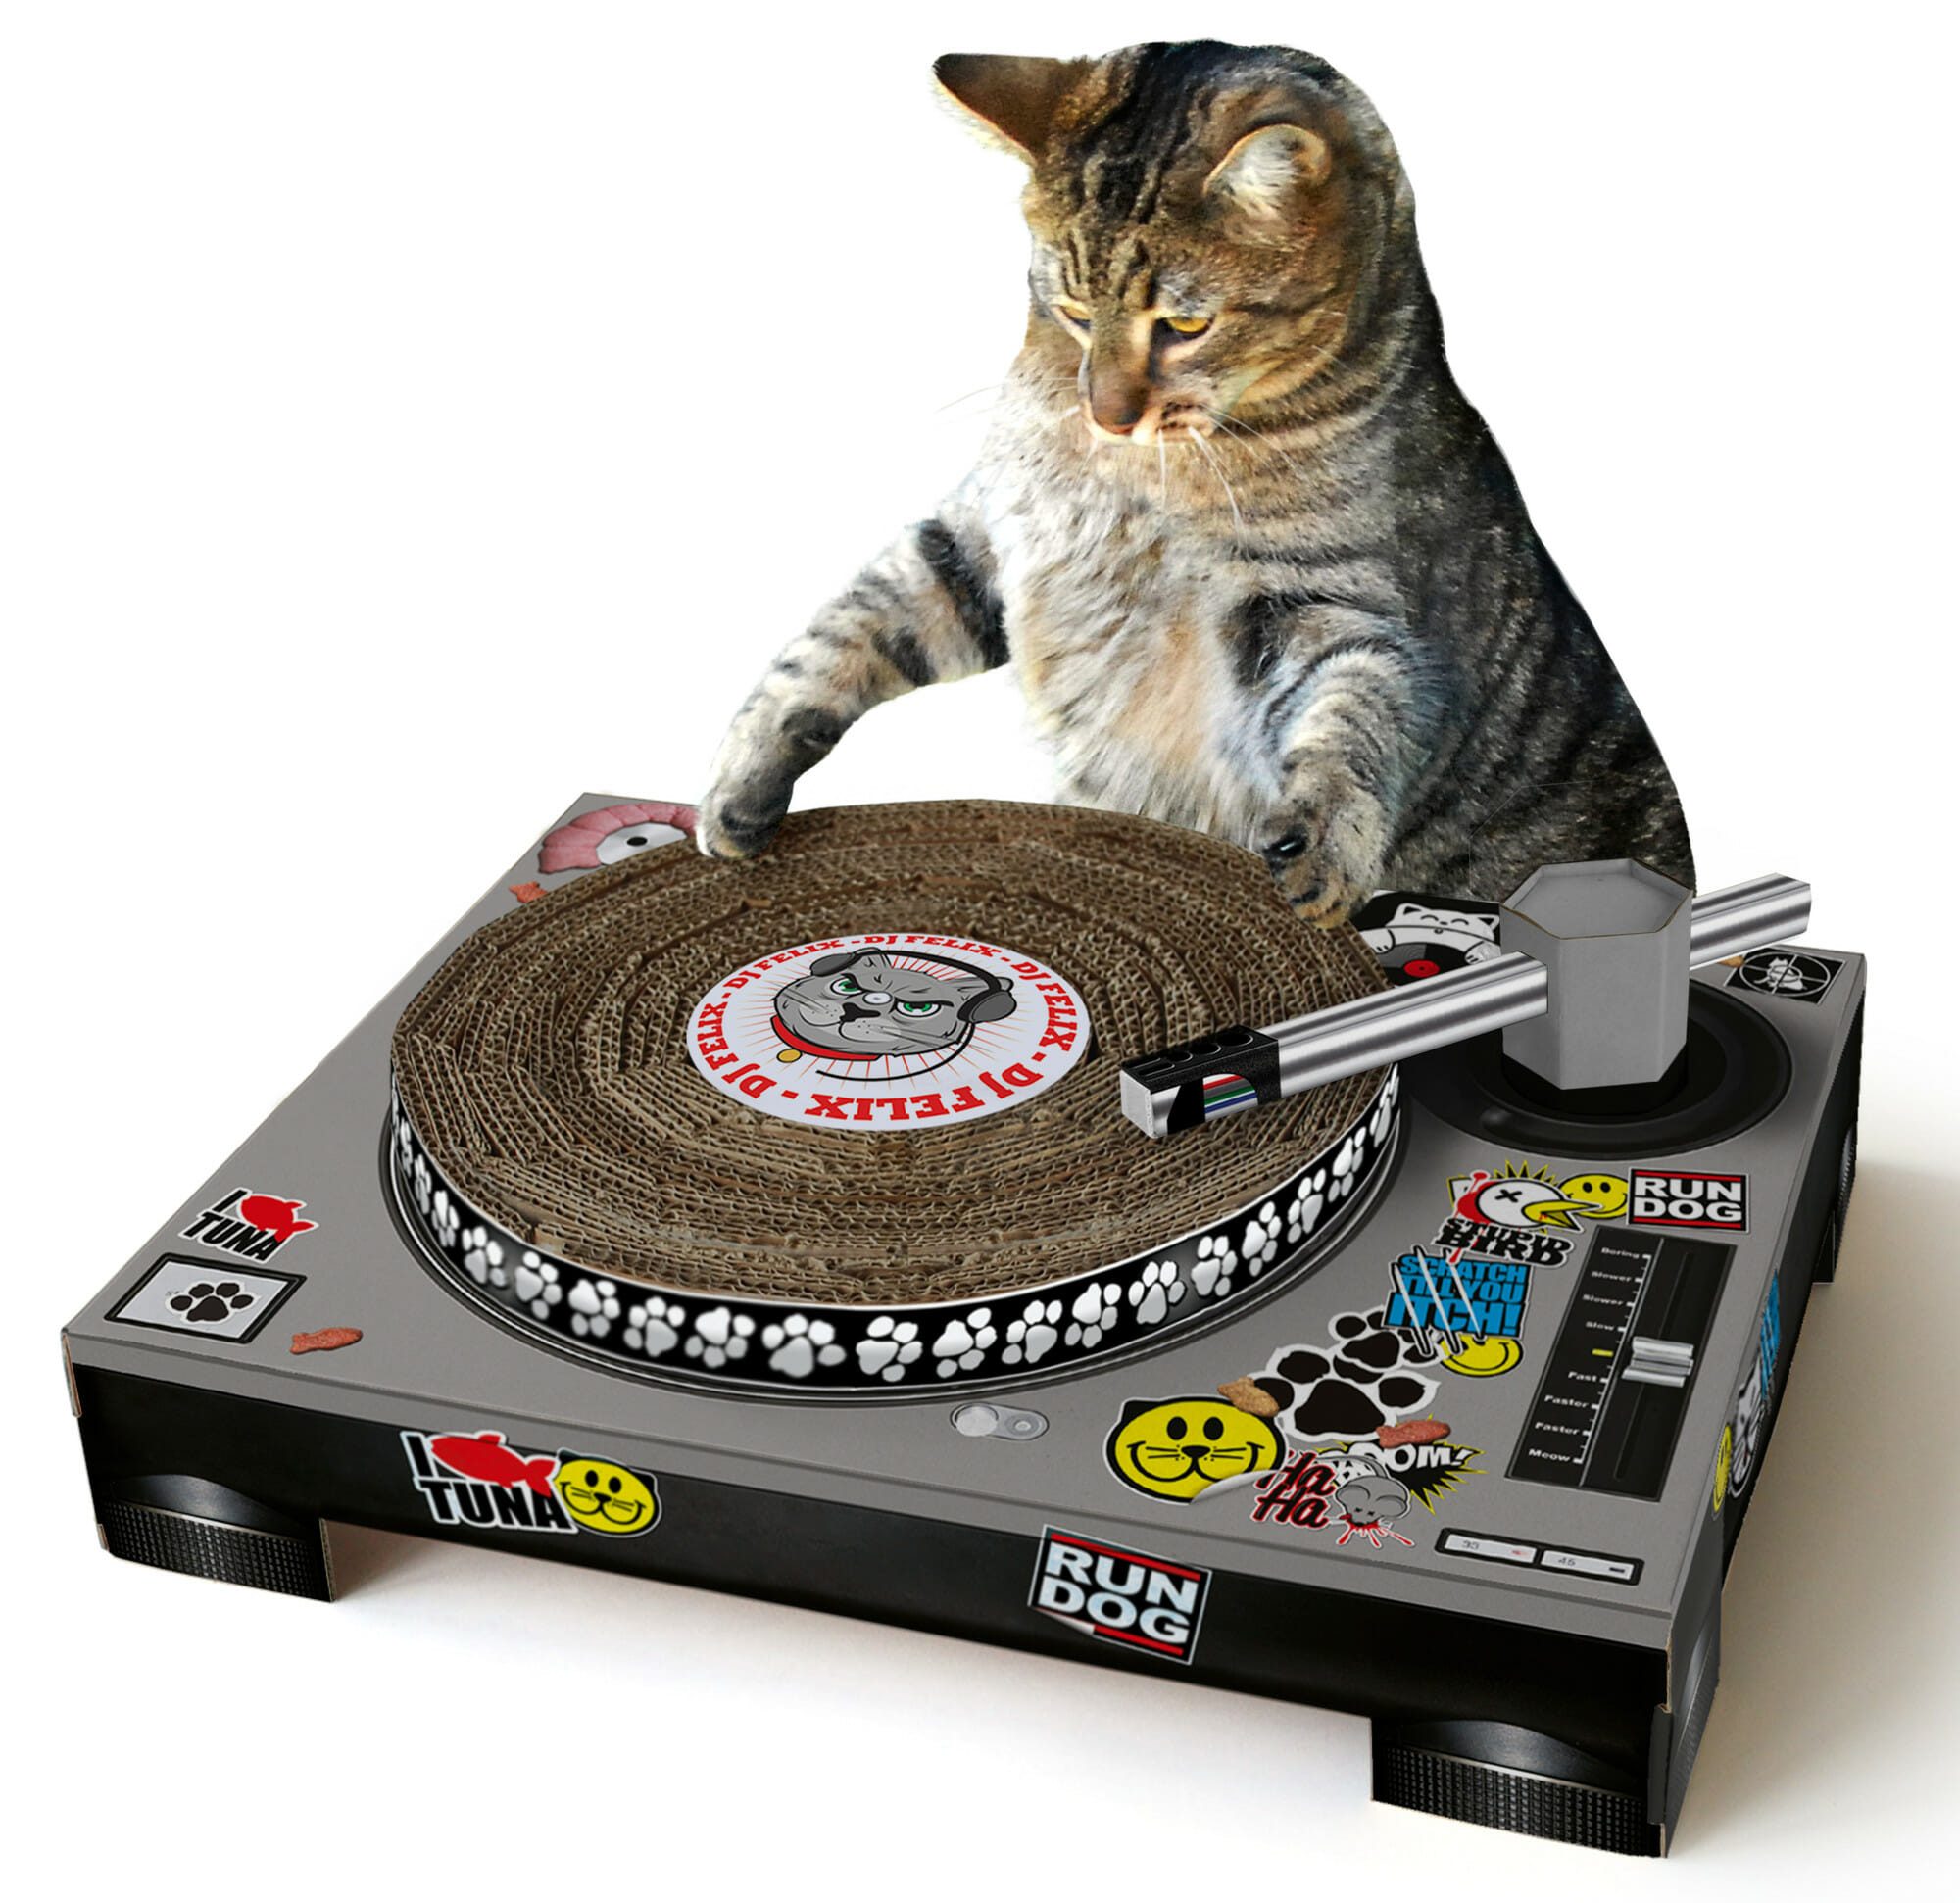 Cat Scratch DJ Deck